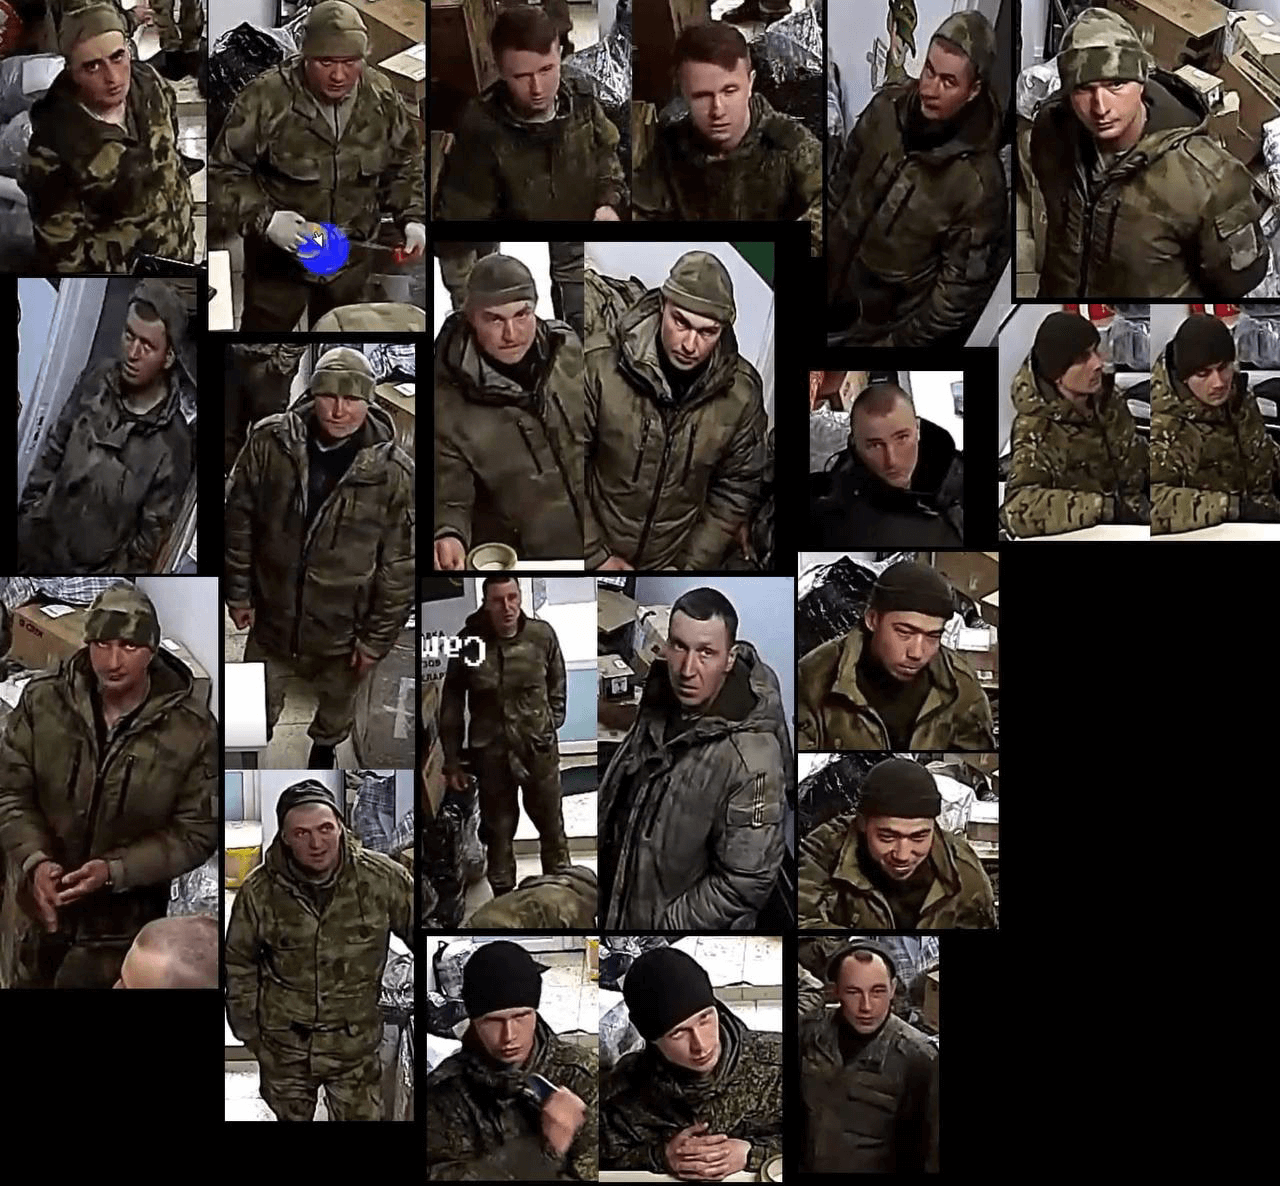 «Беларускі Гаюн» опубликовал данные солдат-мародёров ВС РФ, которые могут быть причастны к преступлениям на территории Украины